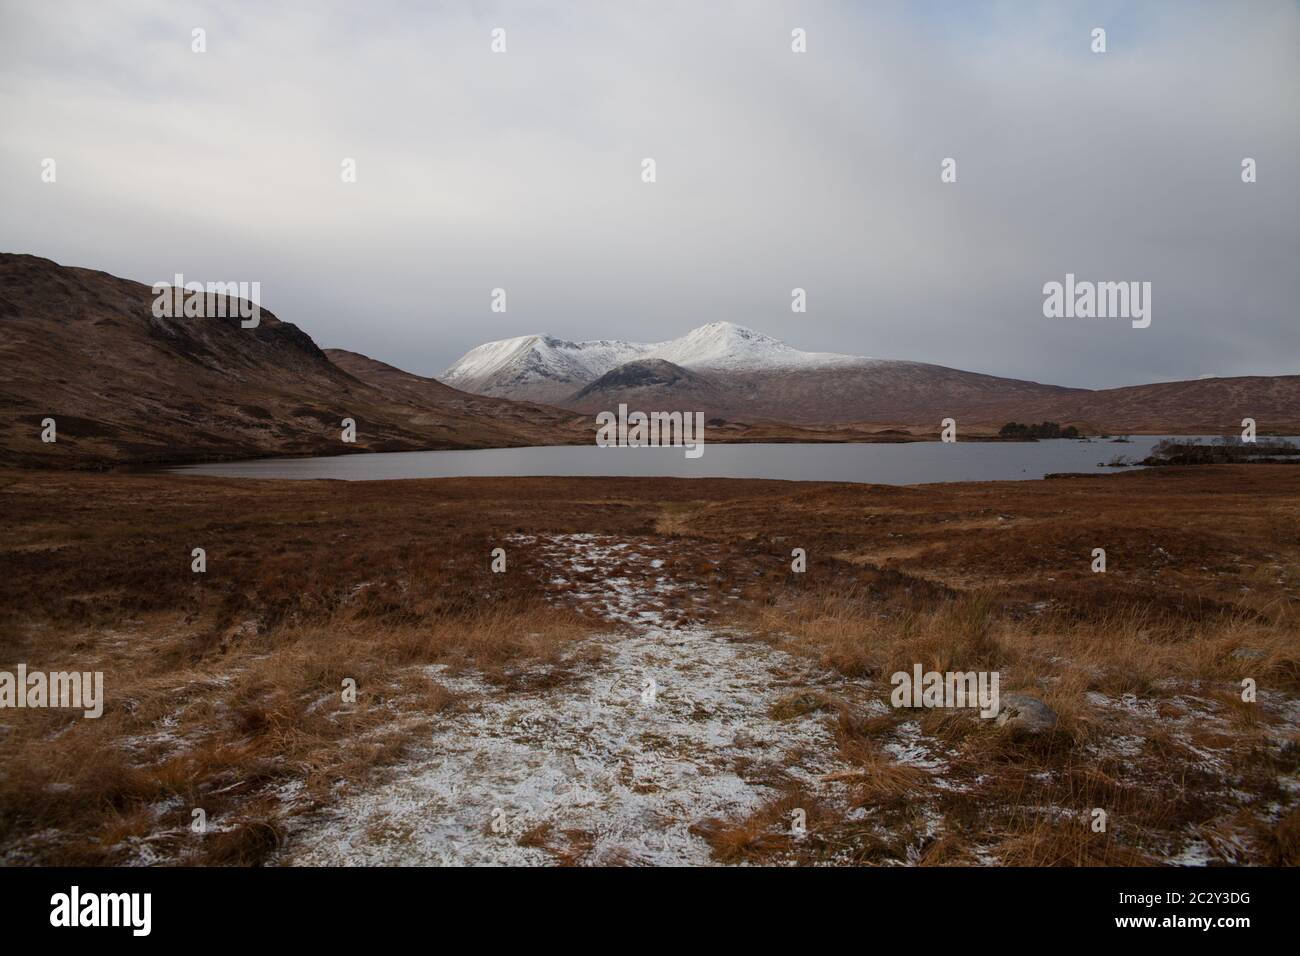 Au loin, les montagnes ont été enneigées avec un loch, Glencoe, en Écosse Banque D'Images